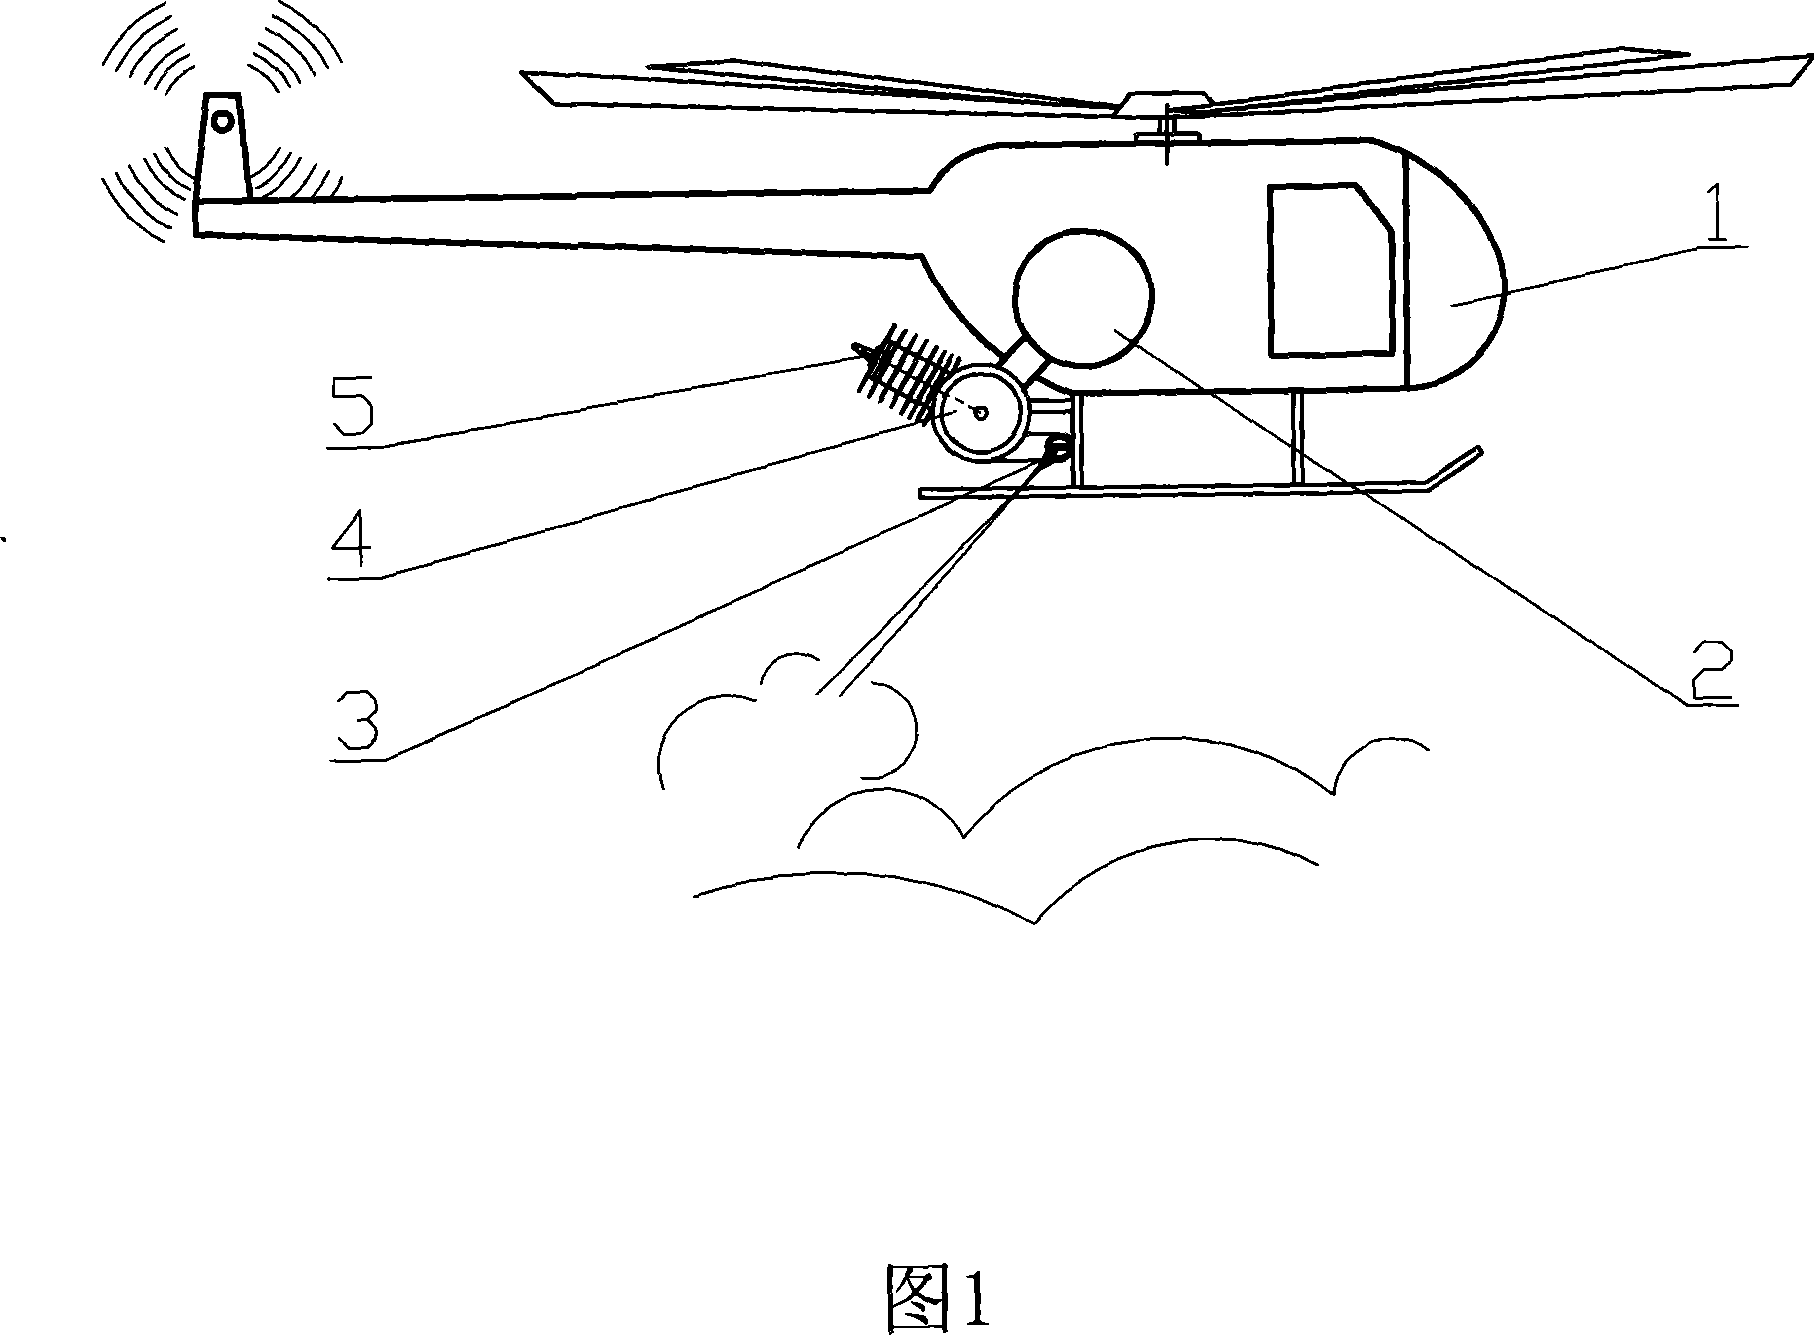 Airborne defogging equipment